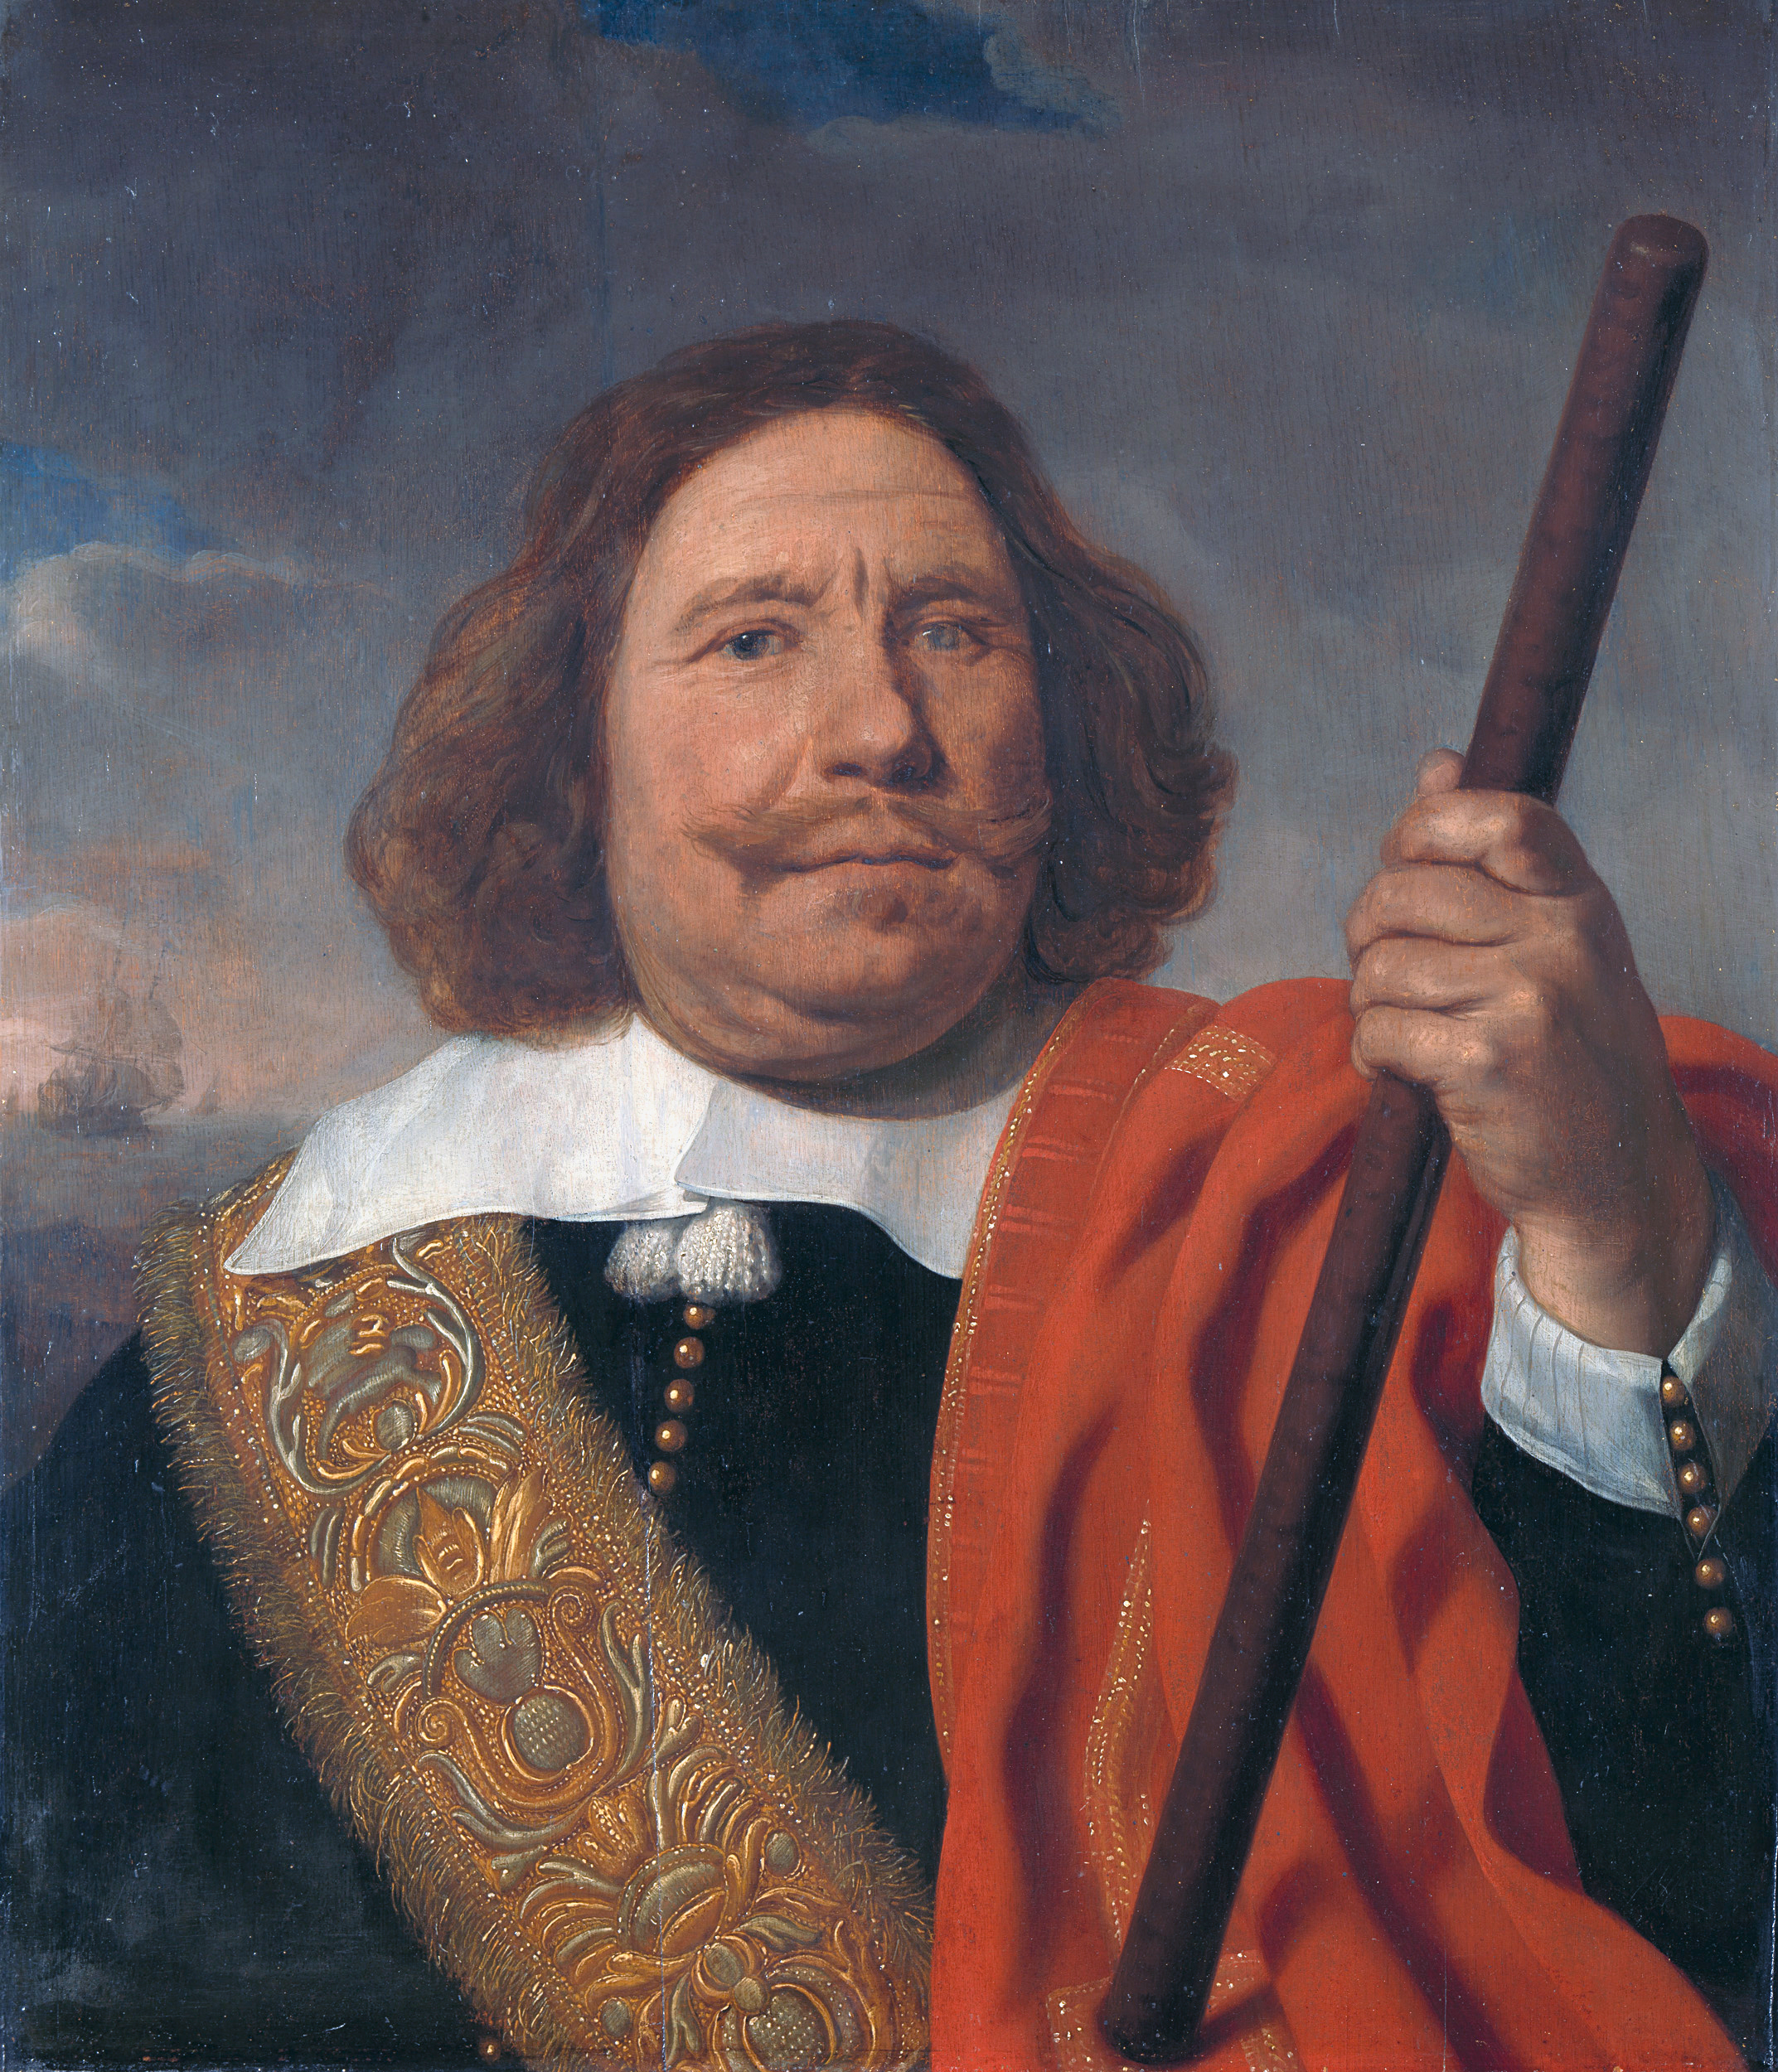 Egbert Bartolomeusz Kortenaer of Egbert Meussen Cortenaer (Groningen ca.1604 – bij Lowestoft 13 juni 1665) is een Nederlands admiraal en zeeheld geweest uit de zeventiende eeuw. In plaats van Meussen wordt ook wel de vorm Meeuwisz gebruikt. Het portret is geschilderd door Bartholomeus van der Helst (1613-1670) in 1660. In tegenstelling tot de afbeelding is Kortenaer zijn rechteroog kwijt. Olie op paneel, hoogte 68 cm, breedte 59 cm. Bron: Collectie Rijksmuseum Amsterdam, www.rijksmuseum.nl. Licentie: Public Domain.